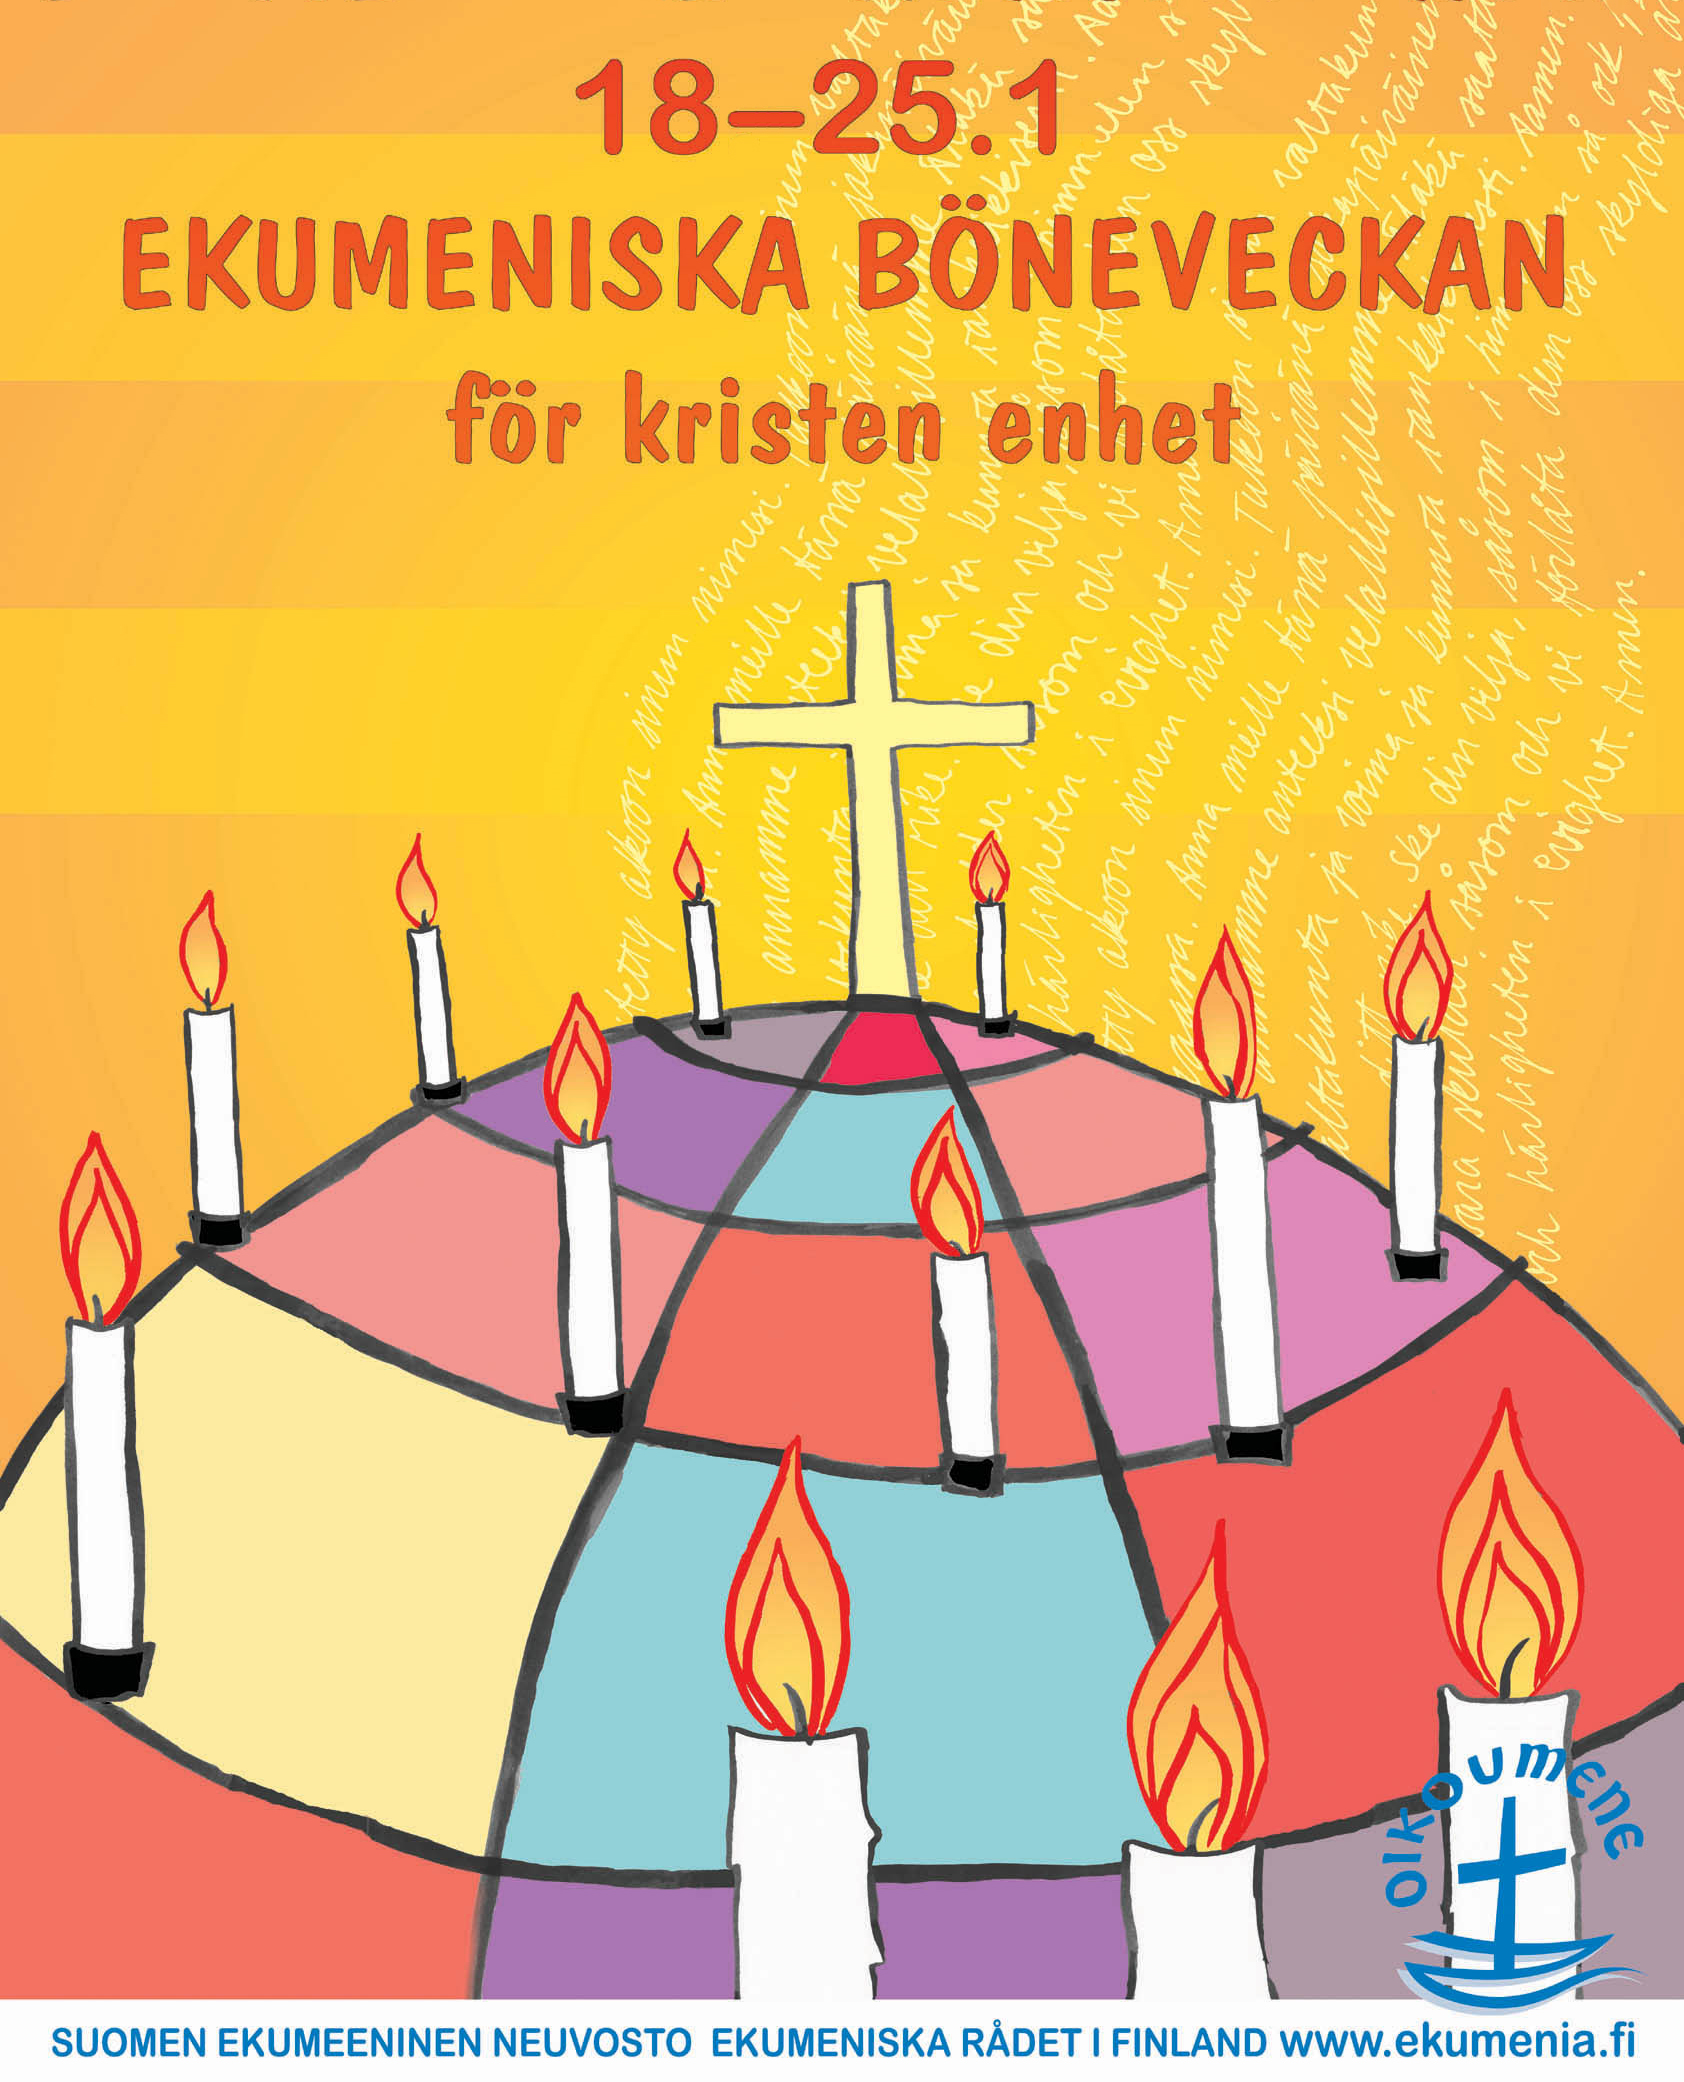 Illustrerat klot med kors och ljus på. Text: 18–25.1 Ekumeniska böneveckan för kristen enhet.